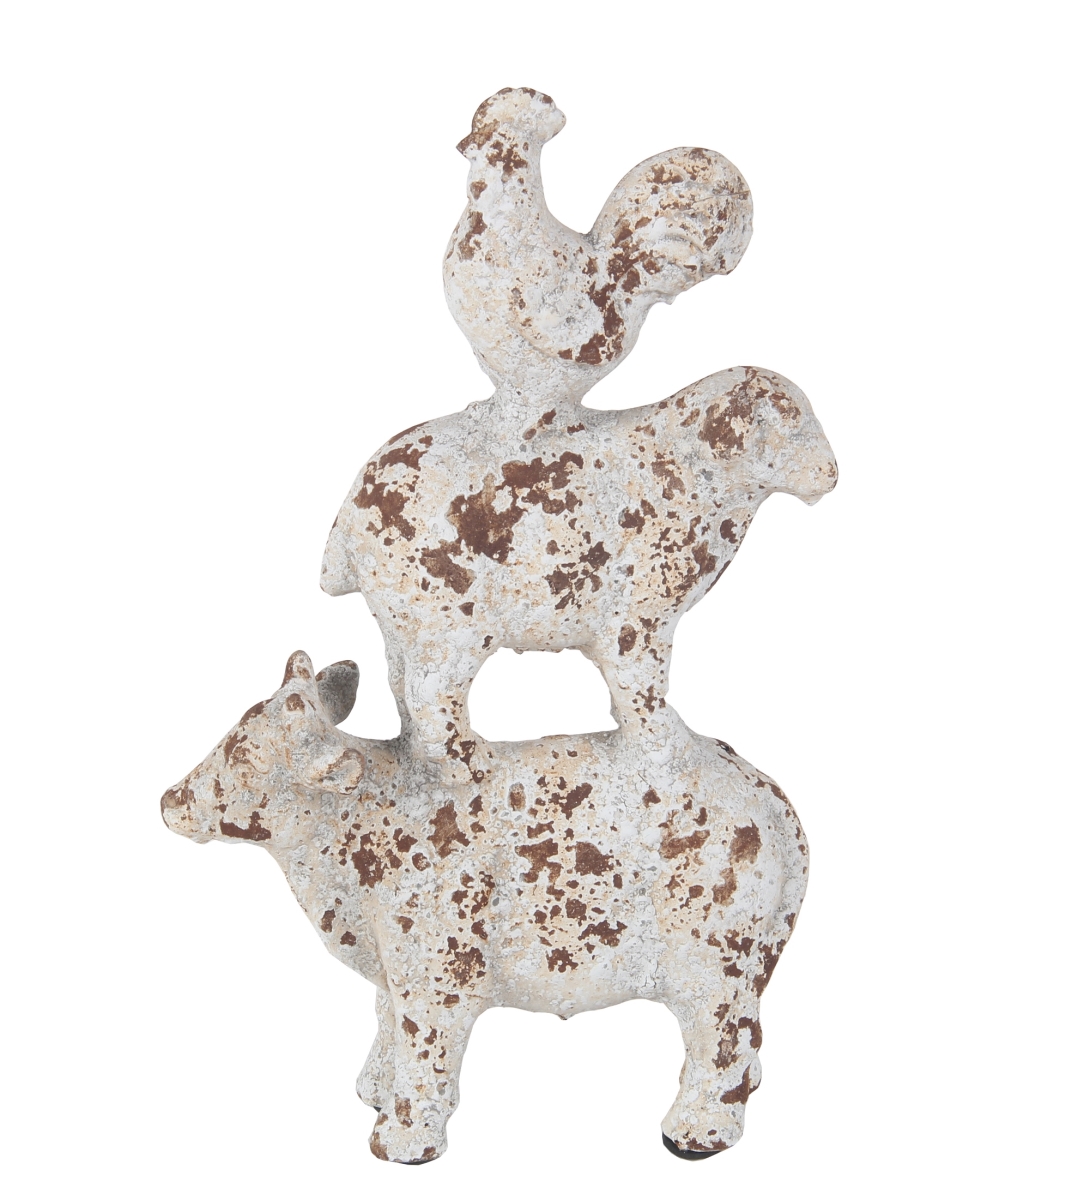 20310 9.5 X 3.5 X 14.5 In. Traditional Antique Ceramic Animals Statue